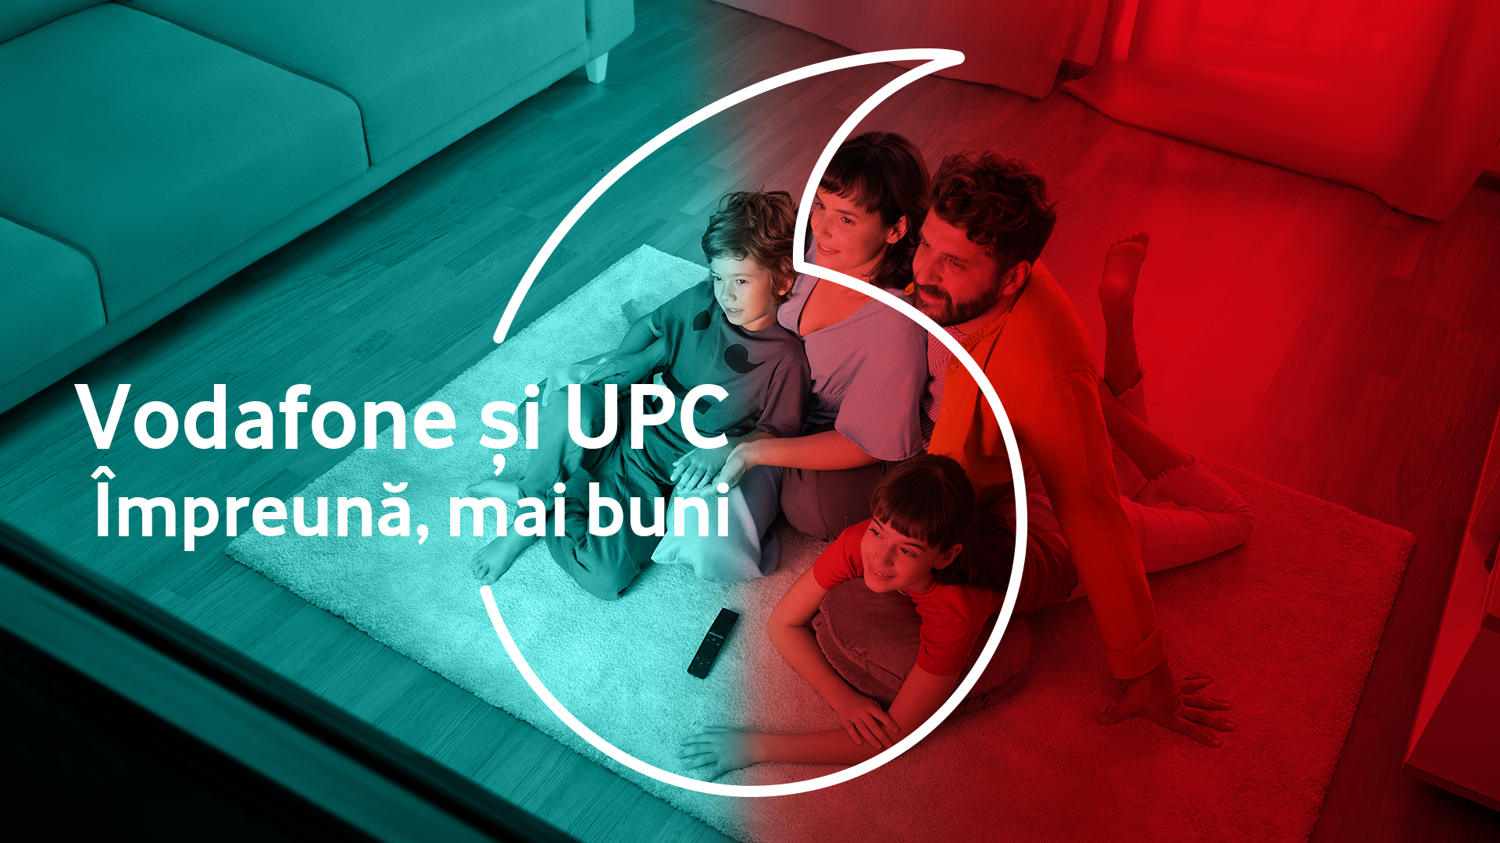 Vodafone oferă pachete de bun-venit și cu beneficii mixte pentru clienții Vodafone și UPC